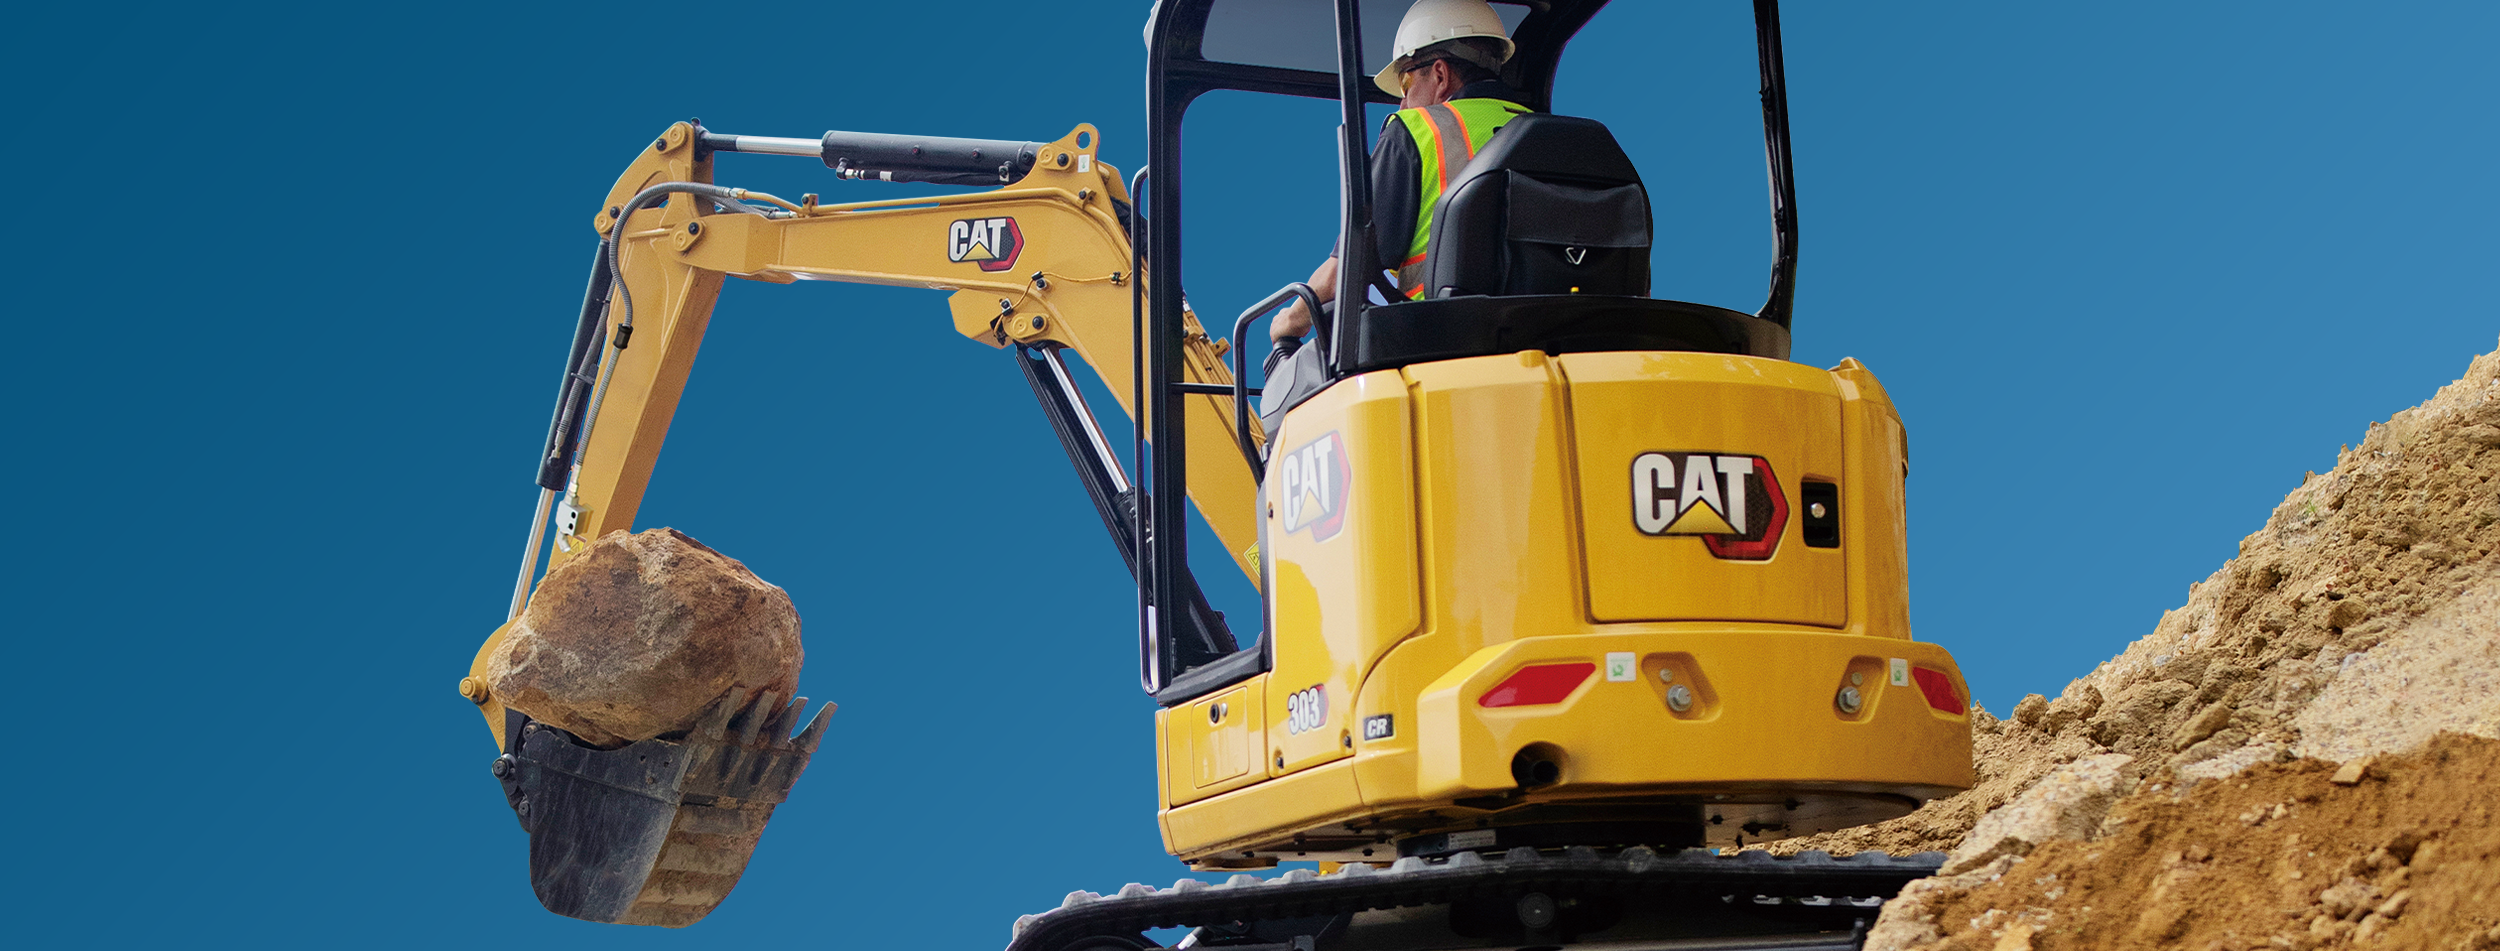 Picture of Cat Mini Excavator